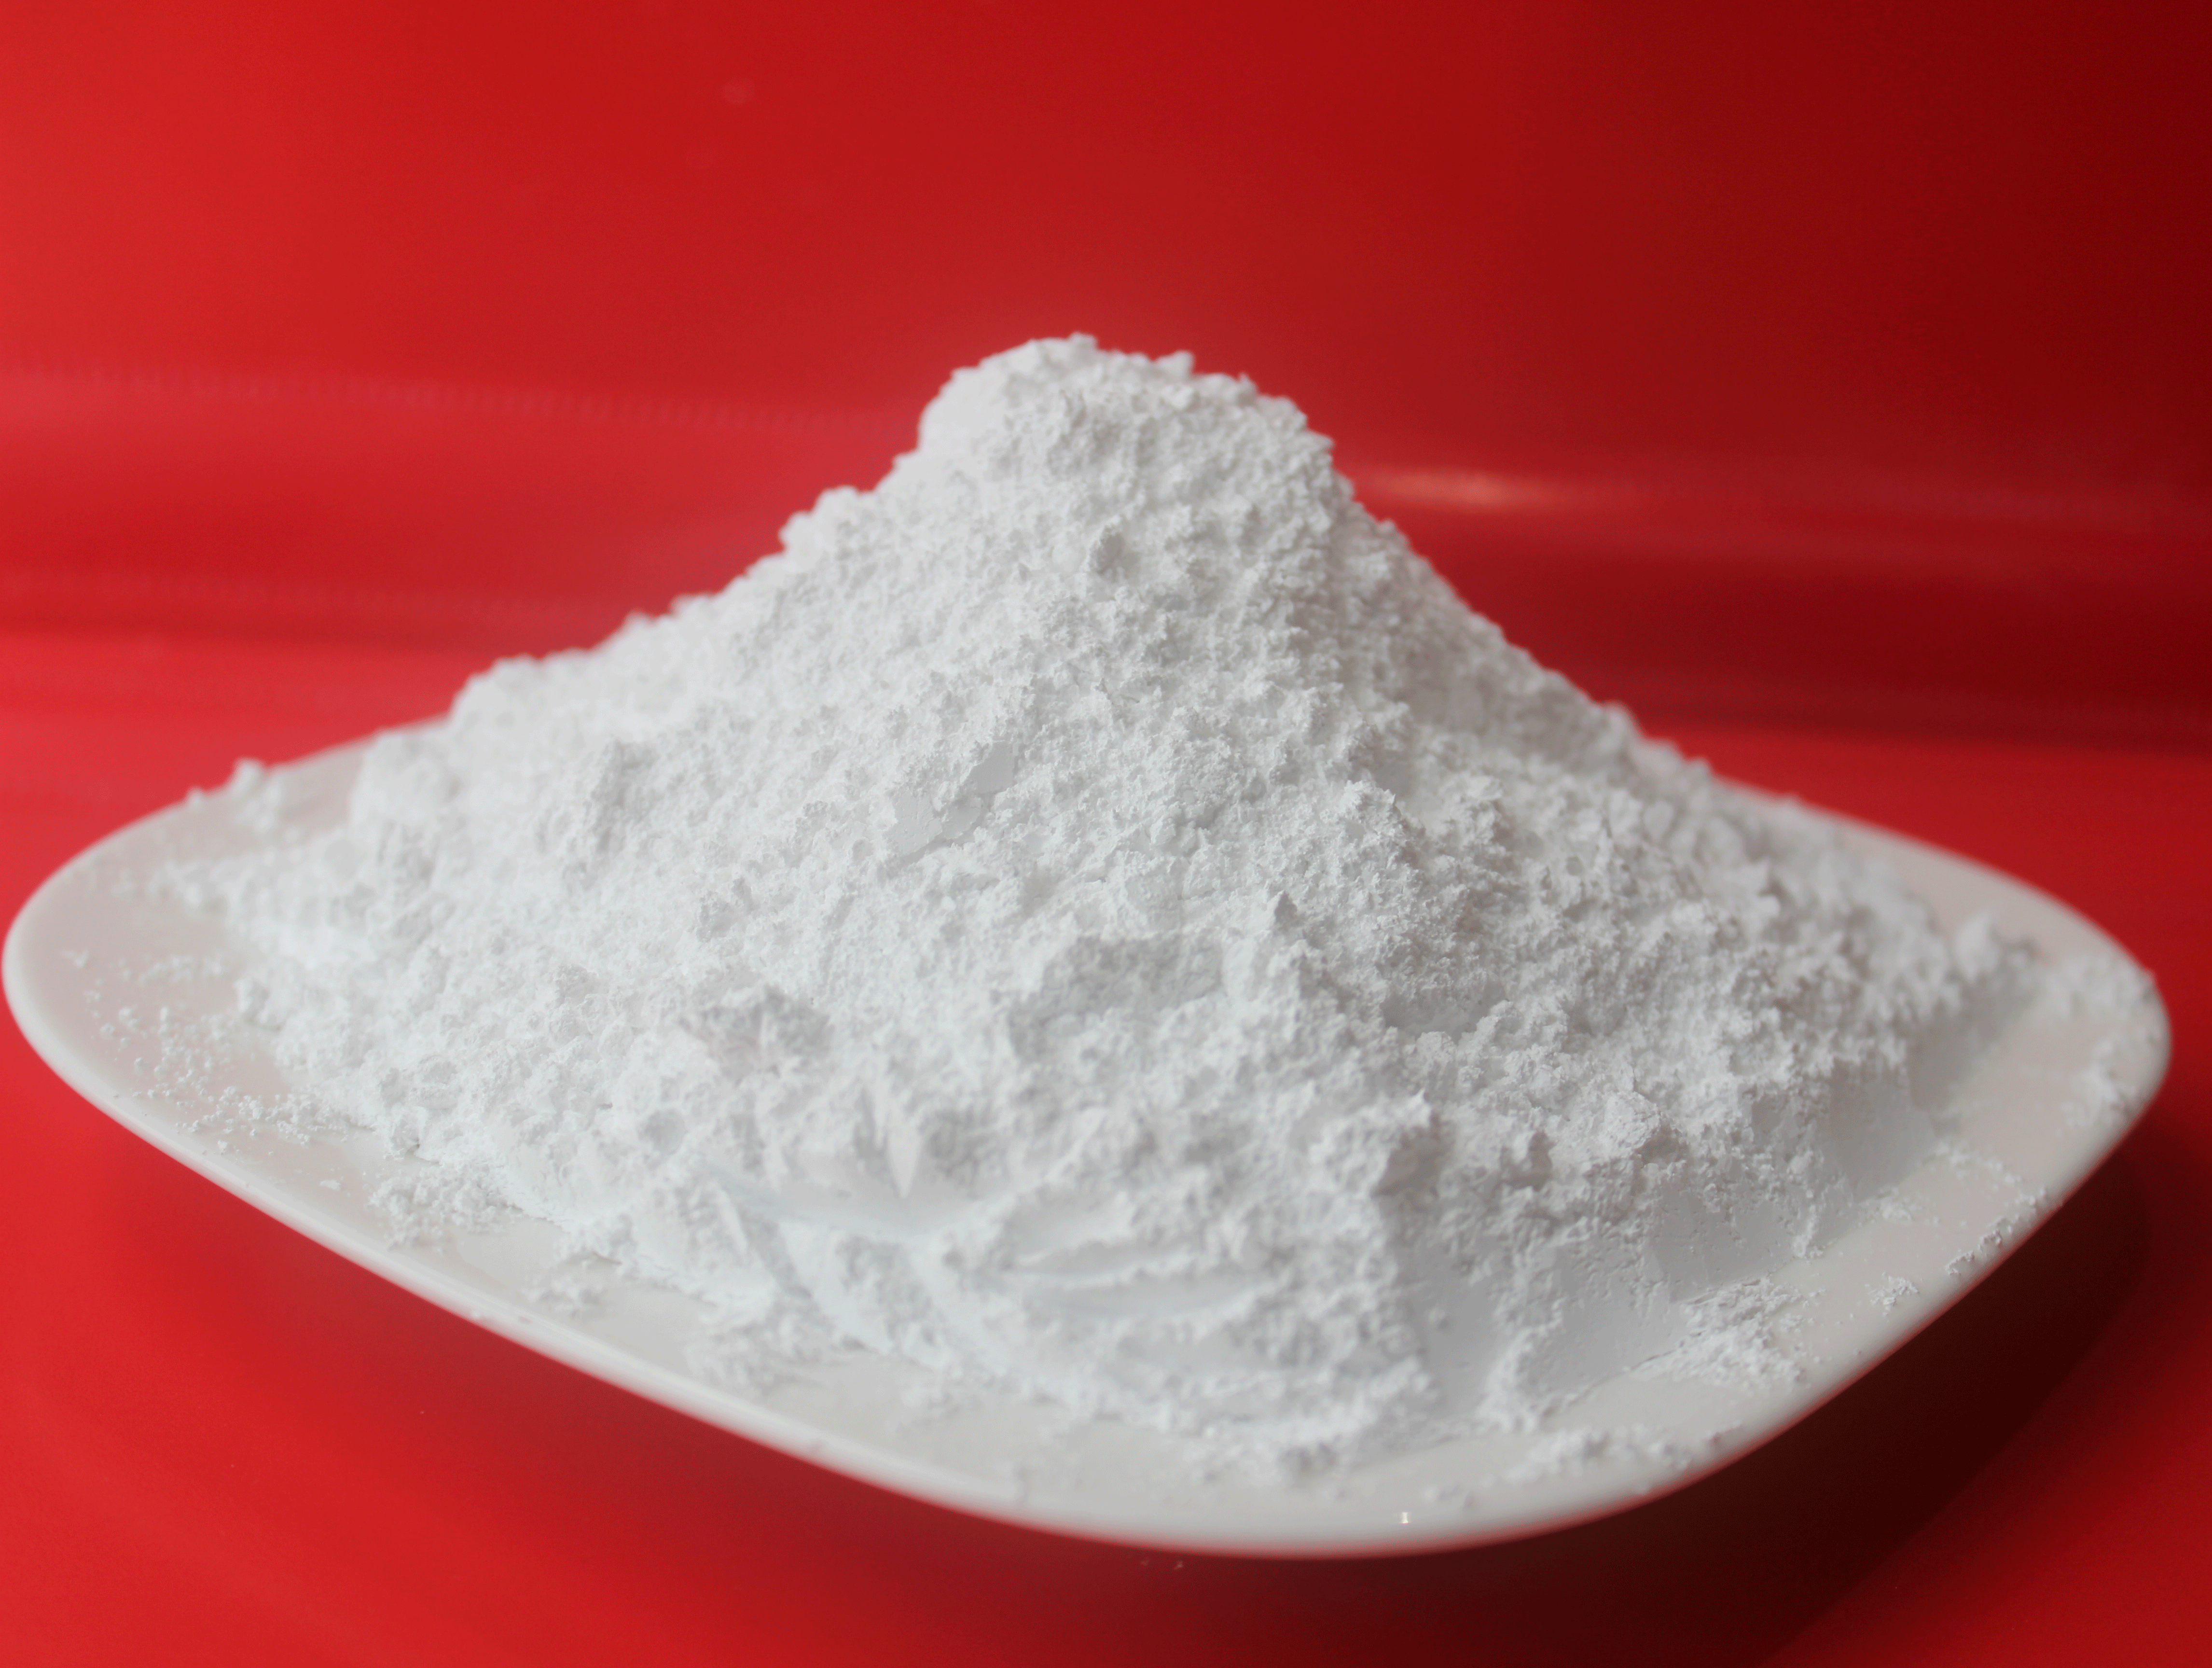  VMI-20C Coated Calcium Carbonate Powder 